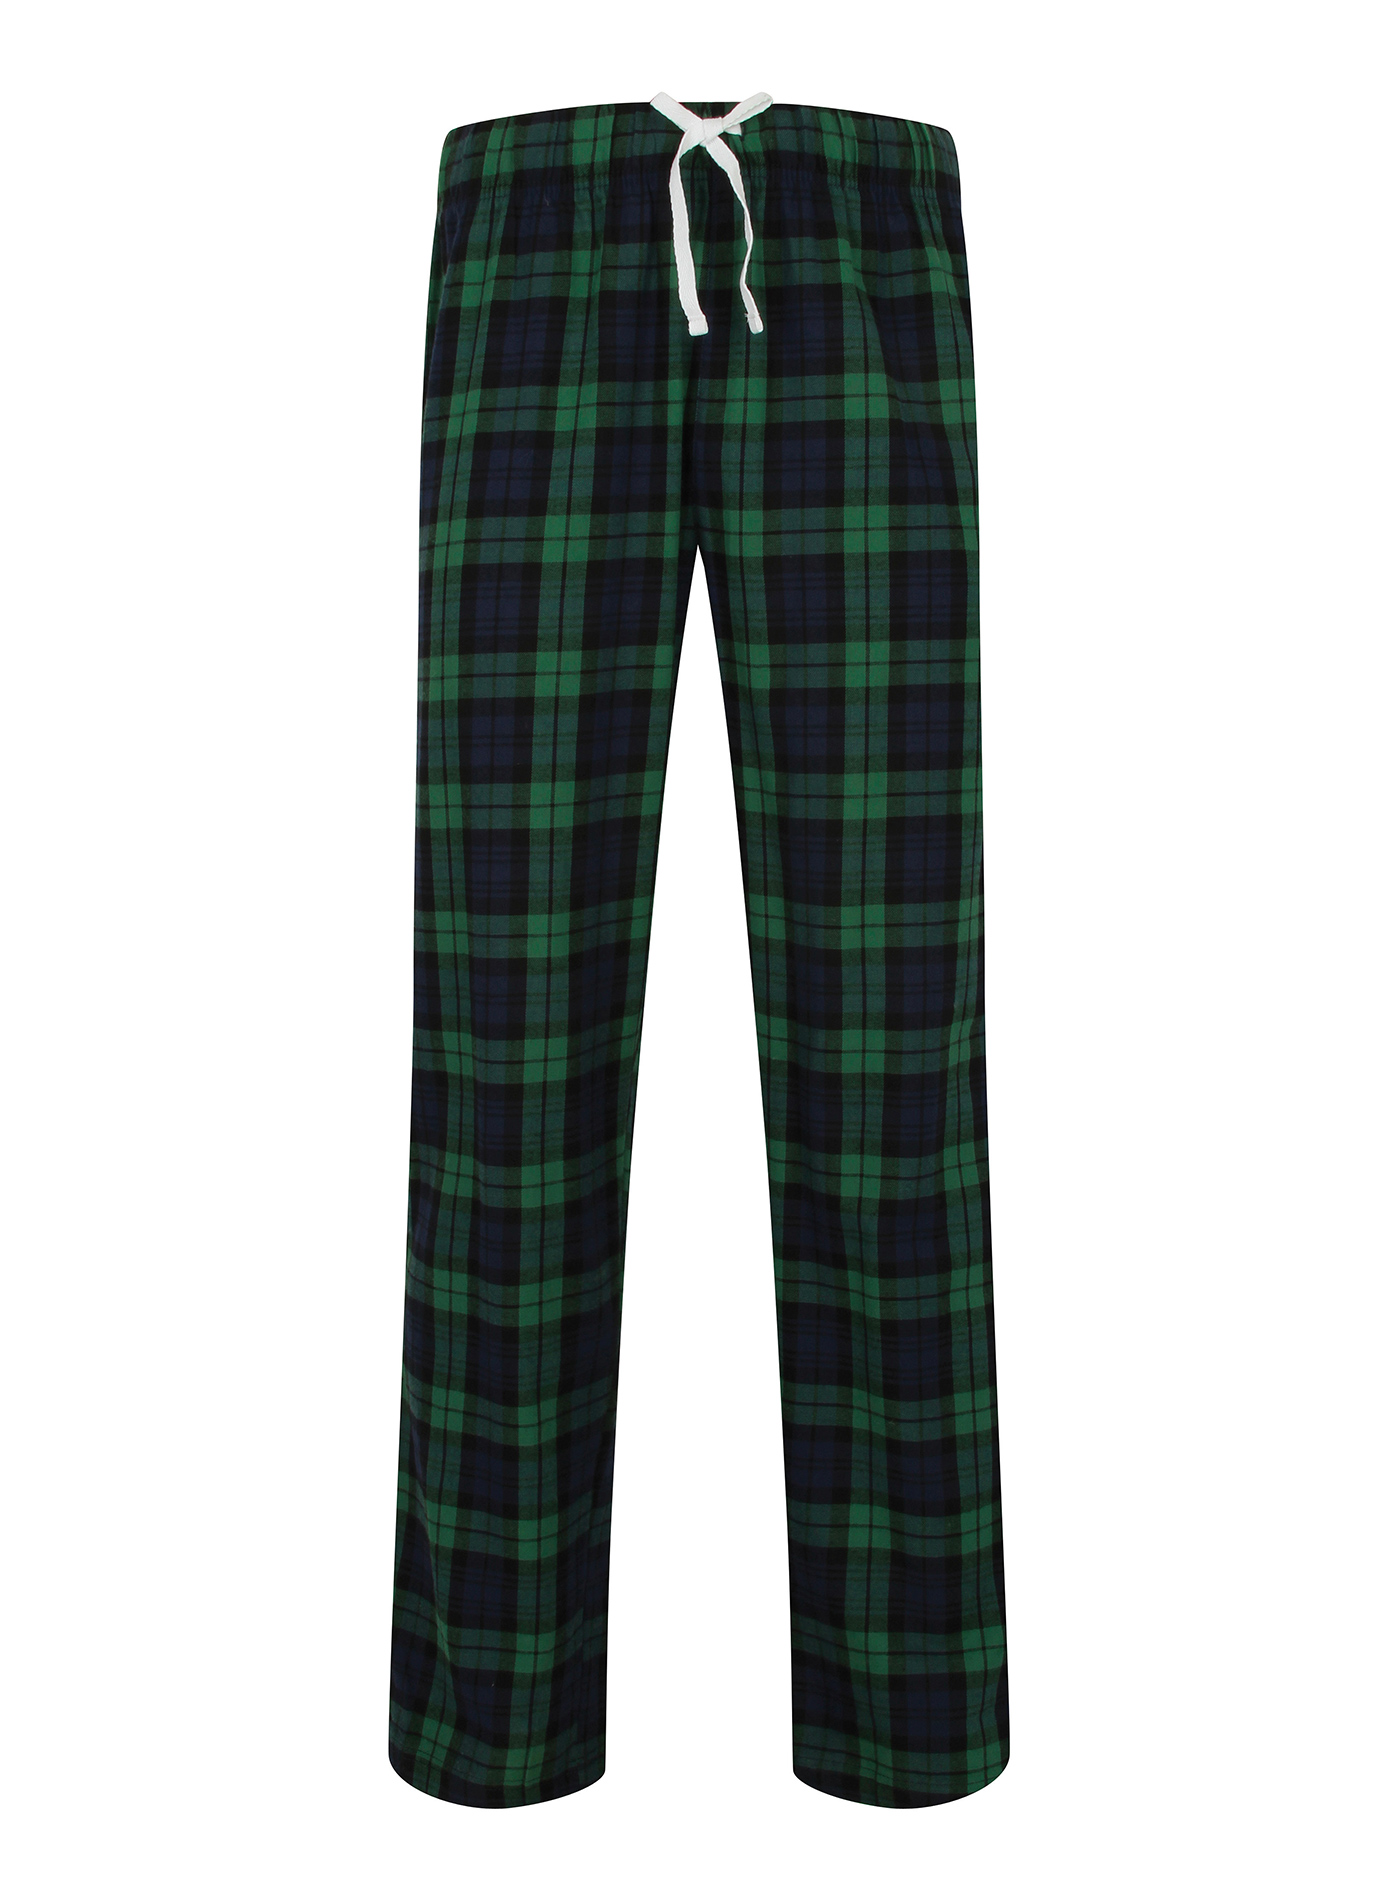 Pánské kalhoty na spaní Skinnifit Tartan - Zelená a modrá XXL